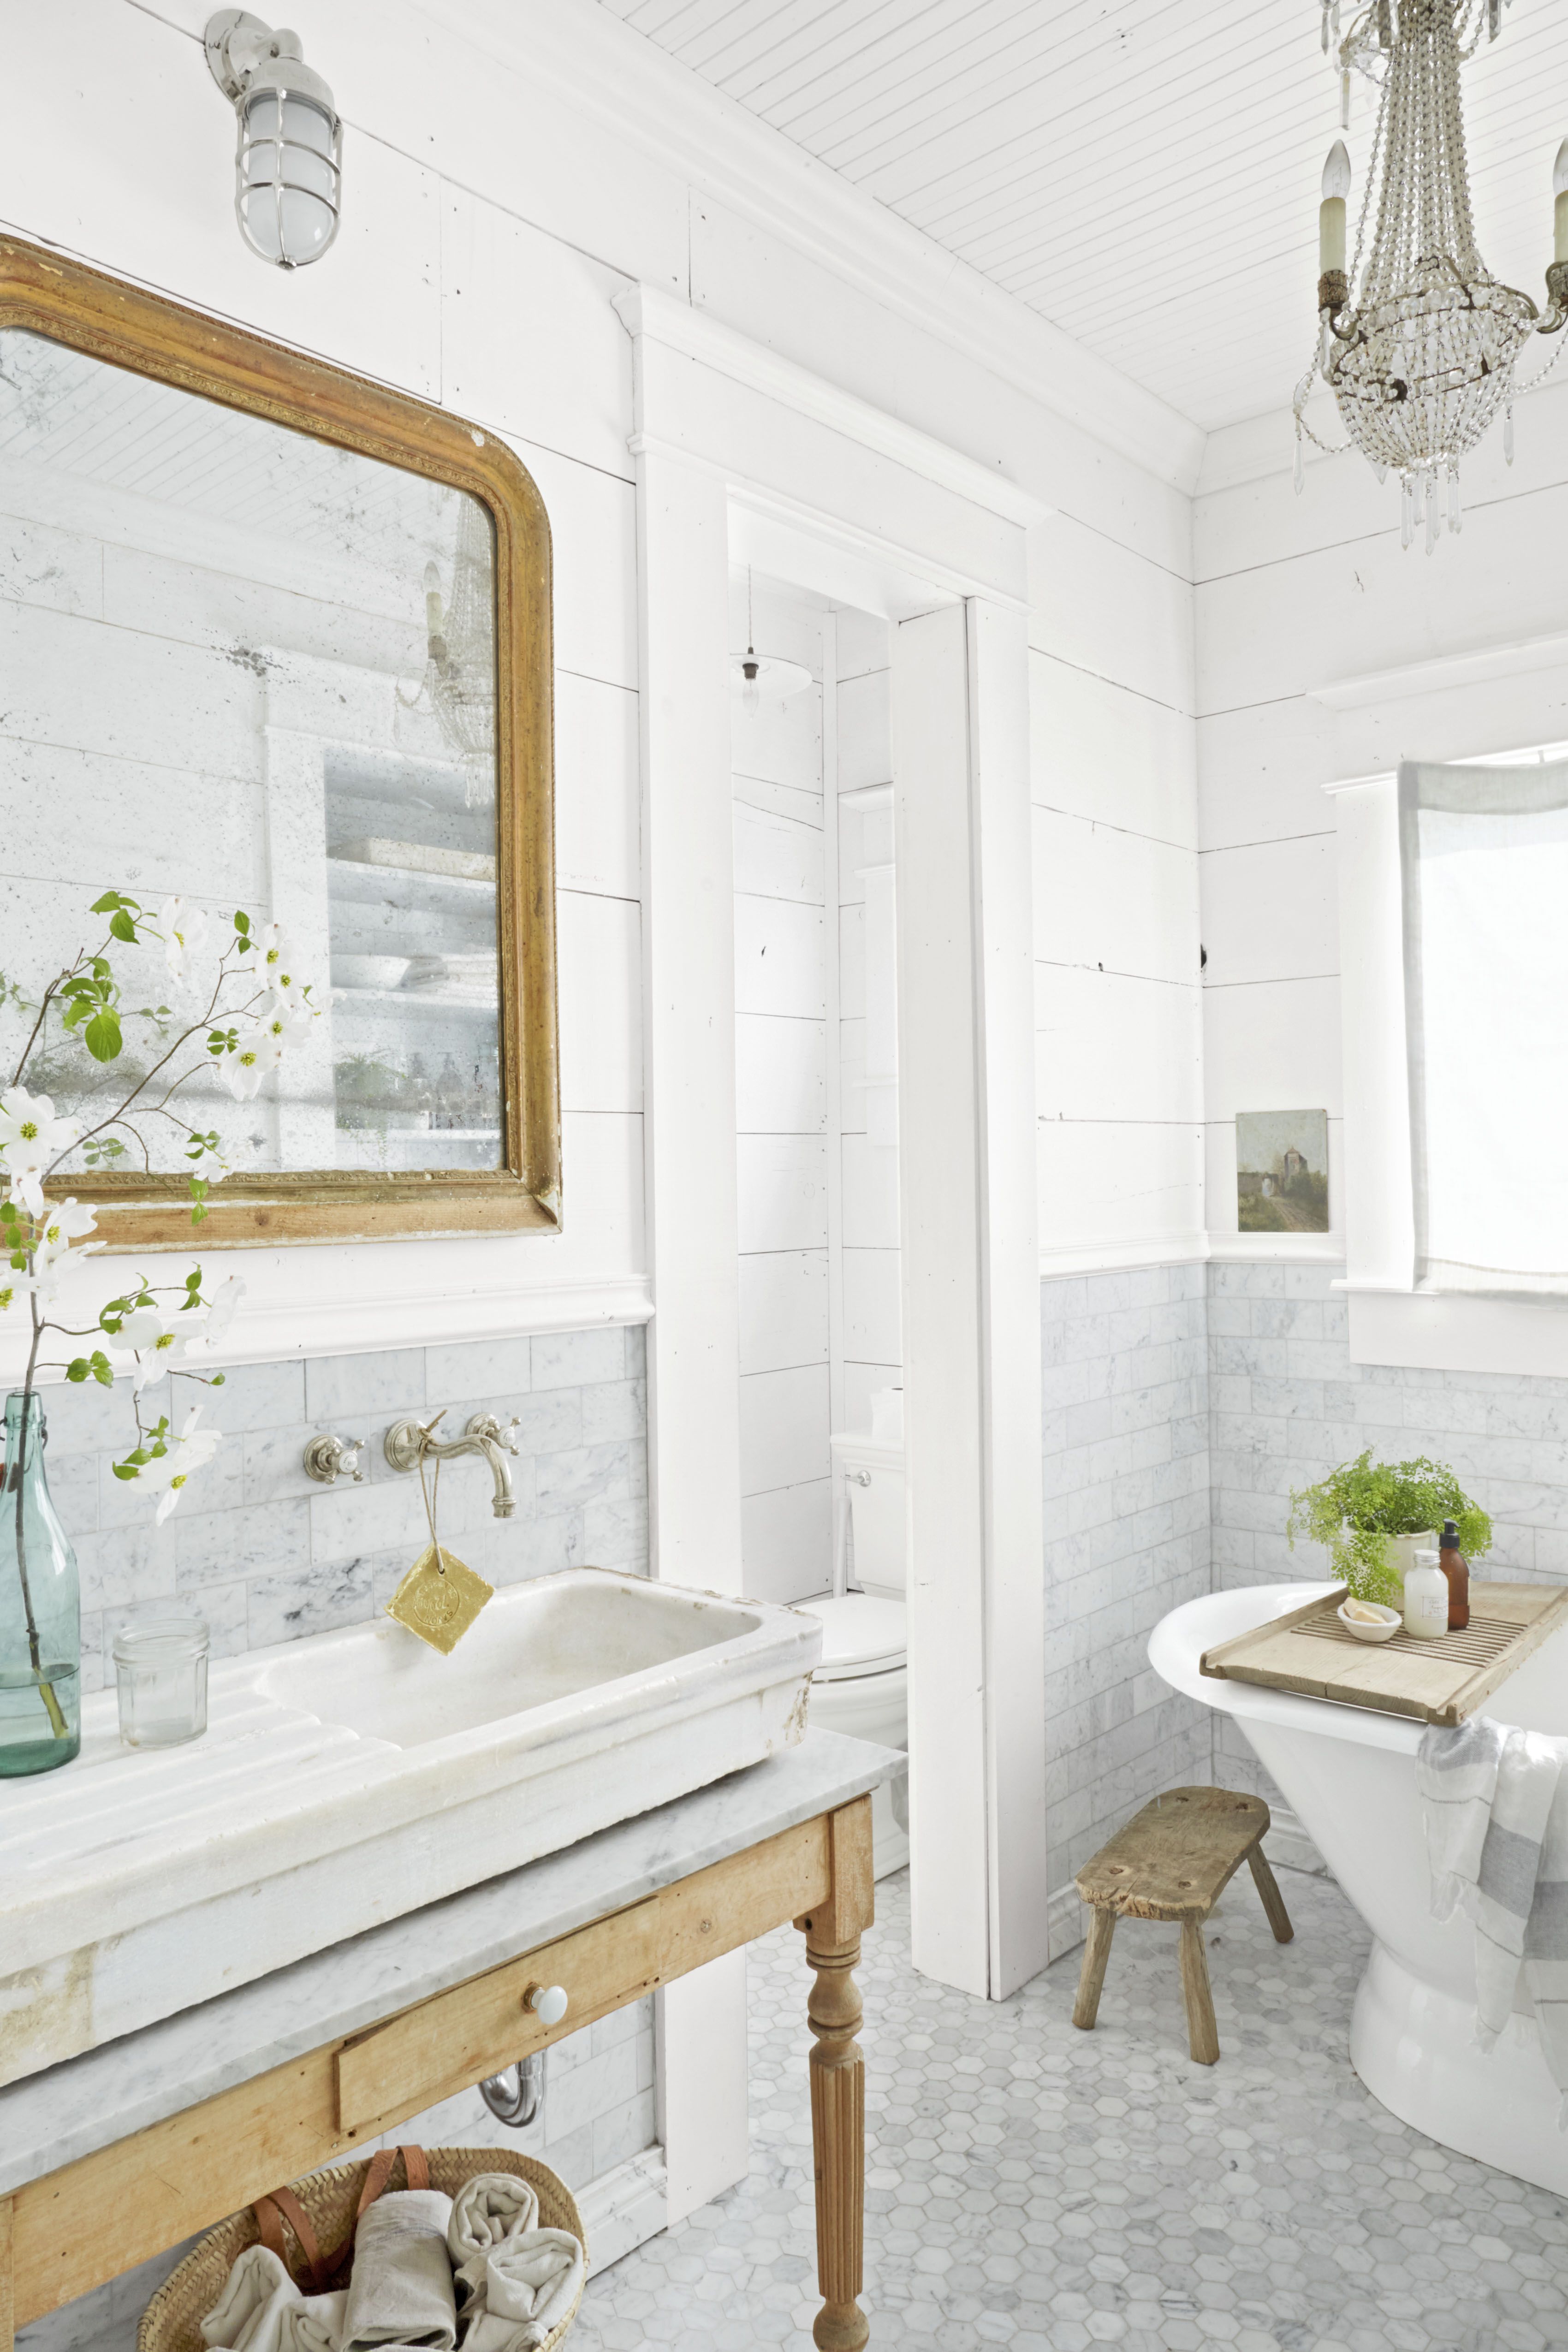 10 Bathroom Countertop Decor Ideas